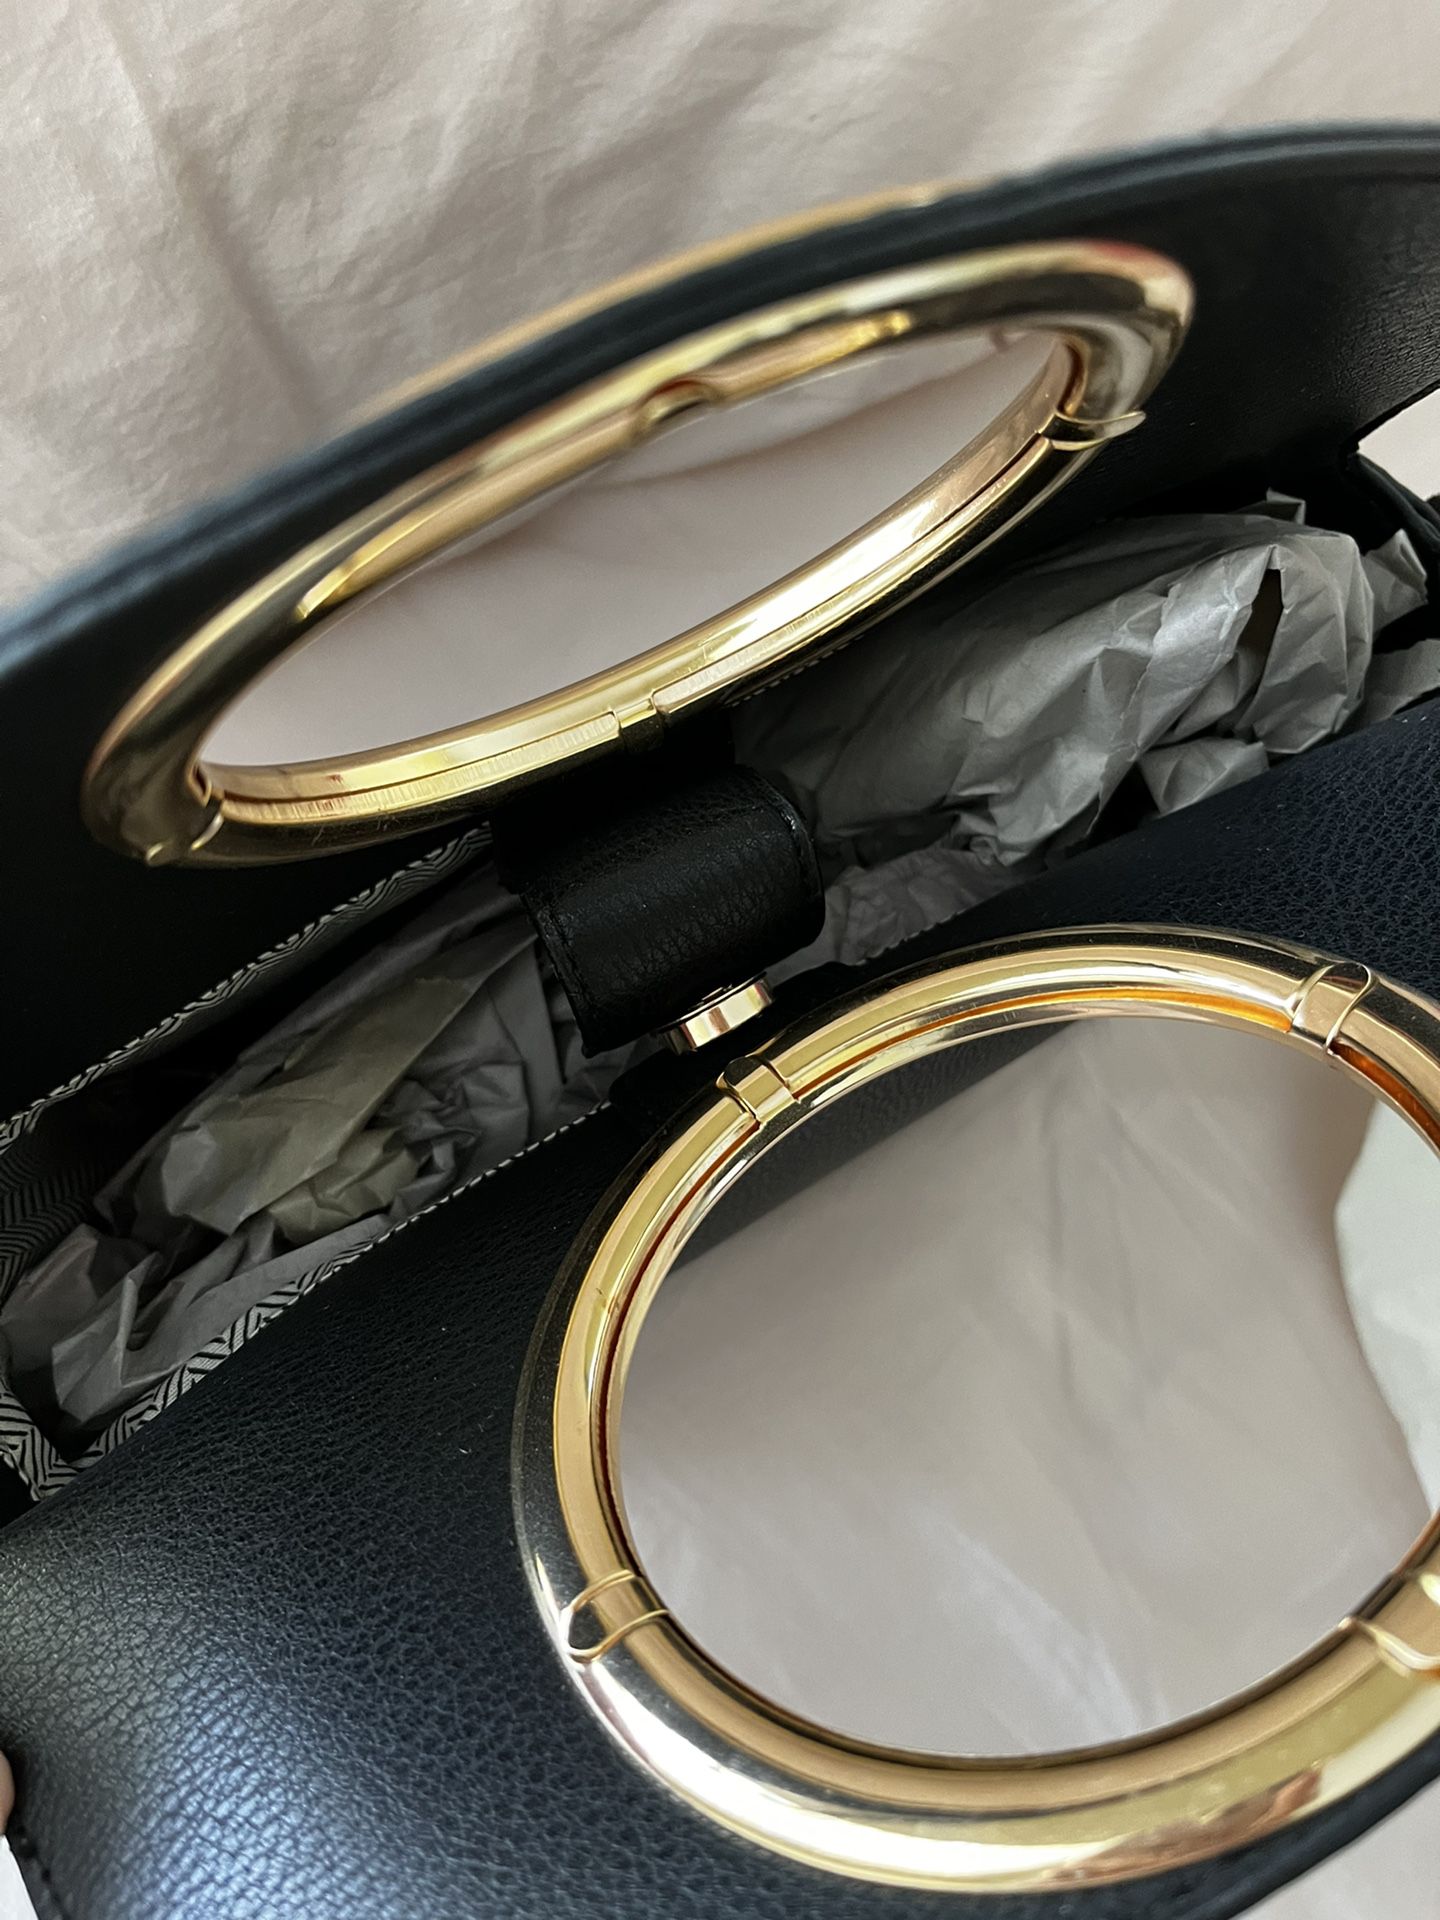 XOXO Black & Gold Handbag